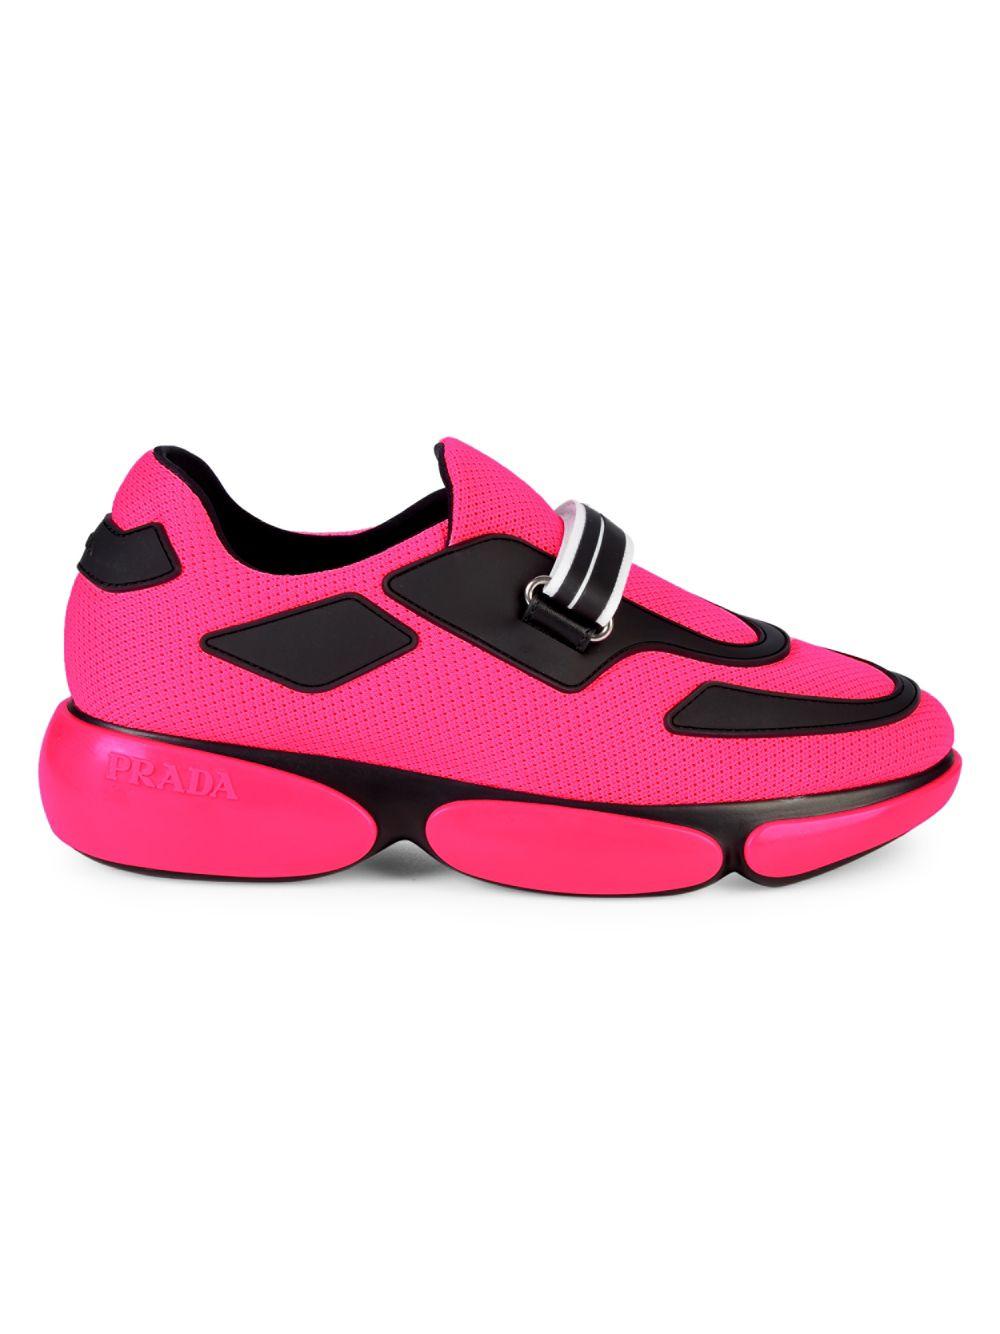 Prada Cloudbust Sneakers in Pink | Lyst